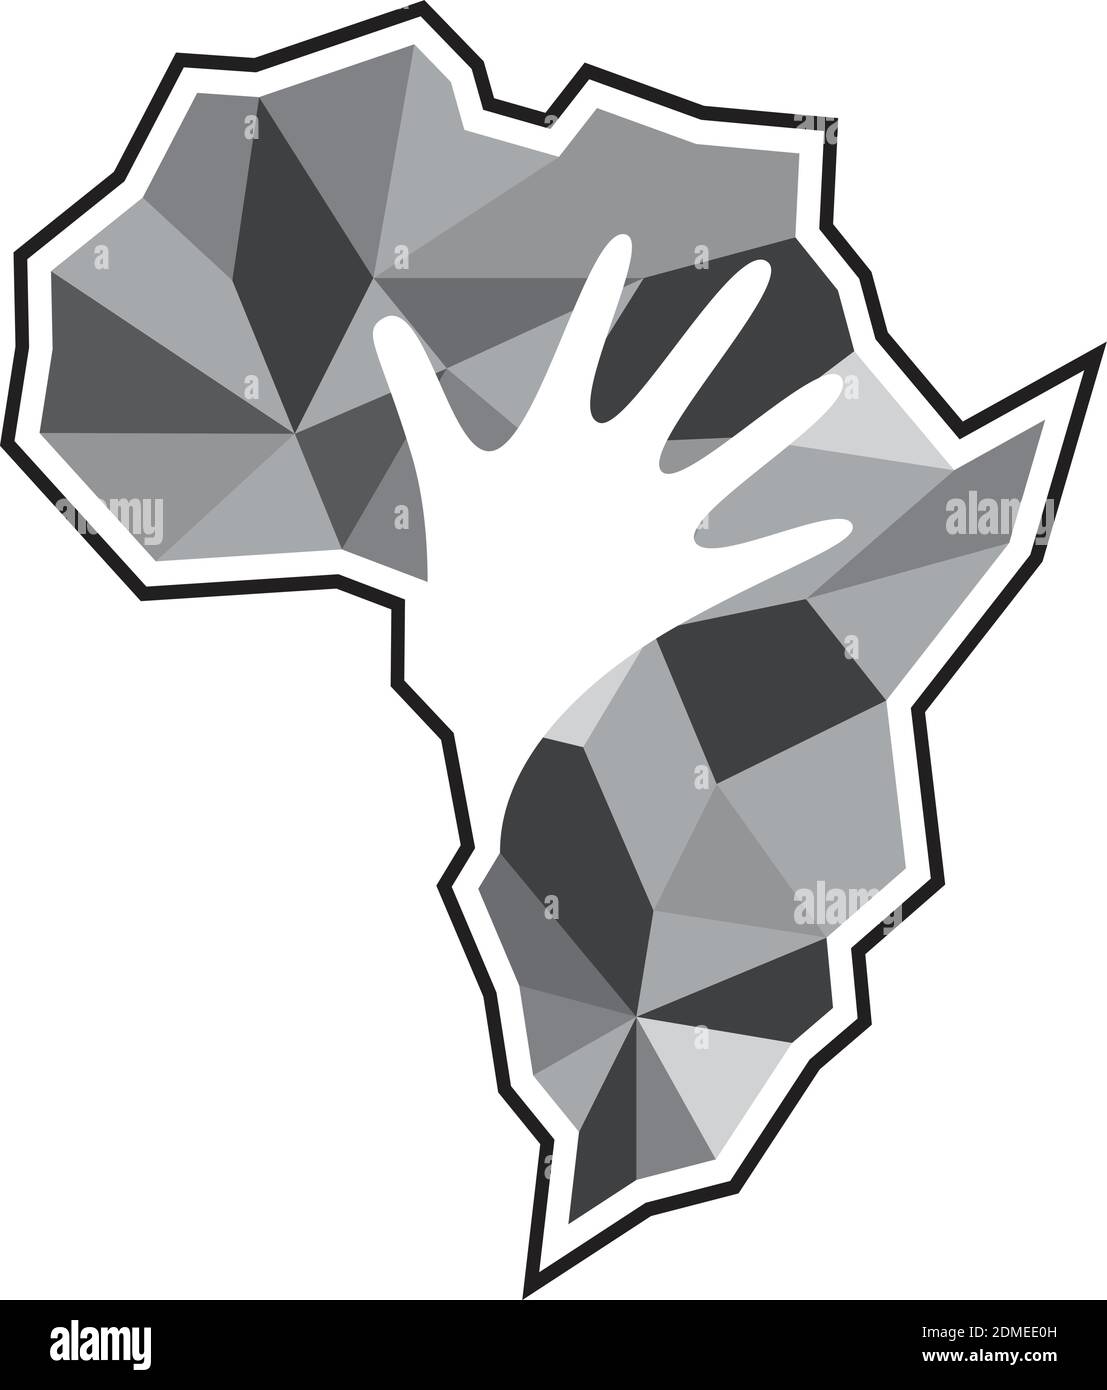 Icona della mappa africana creativa. Illustrazione astratta dell'icona del vettore di mappa africano per il web. Mappa geometrica africana. Mappa manuale. Illustrazione vettoriale EPS.8 EPS.10 Illustrazione Vettoriale